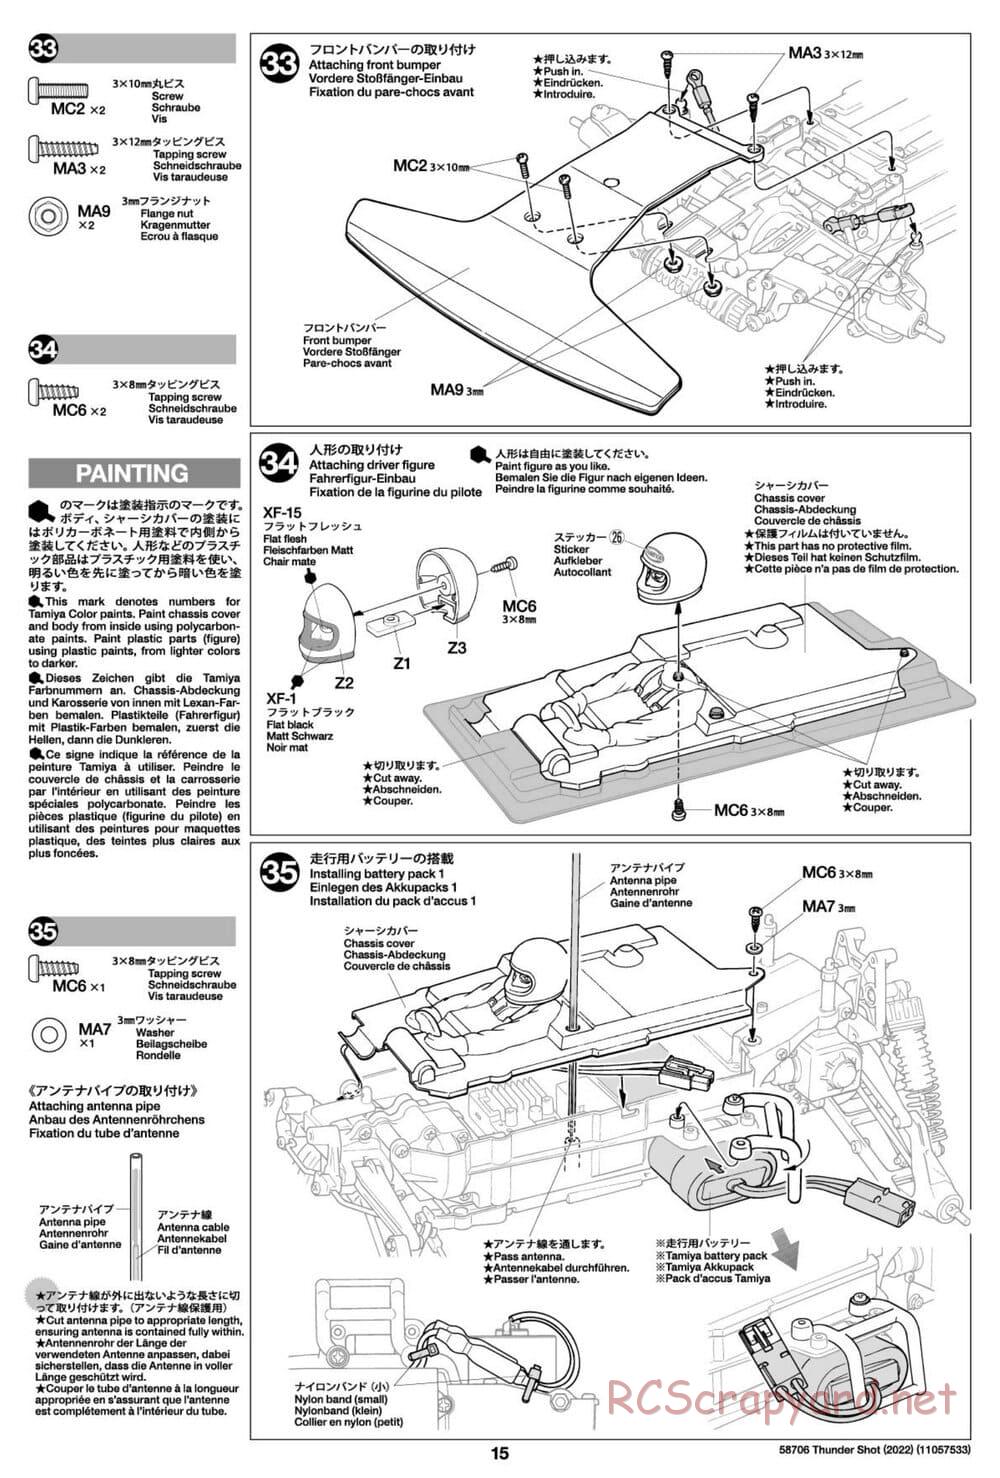 Tamiya - Thunder Shot (2022) - TS1/TS2 Chassis - Manual - Page 15